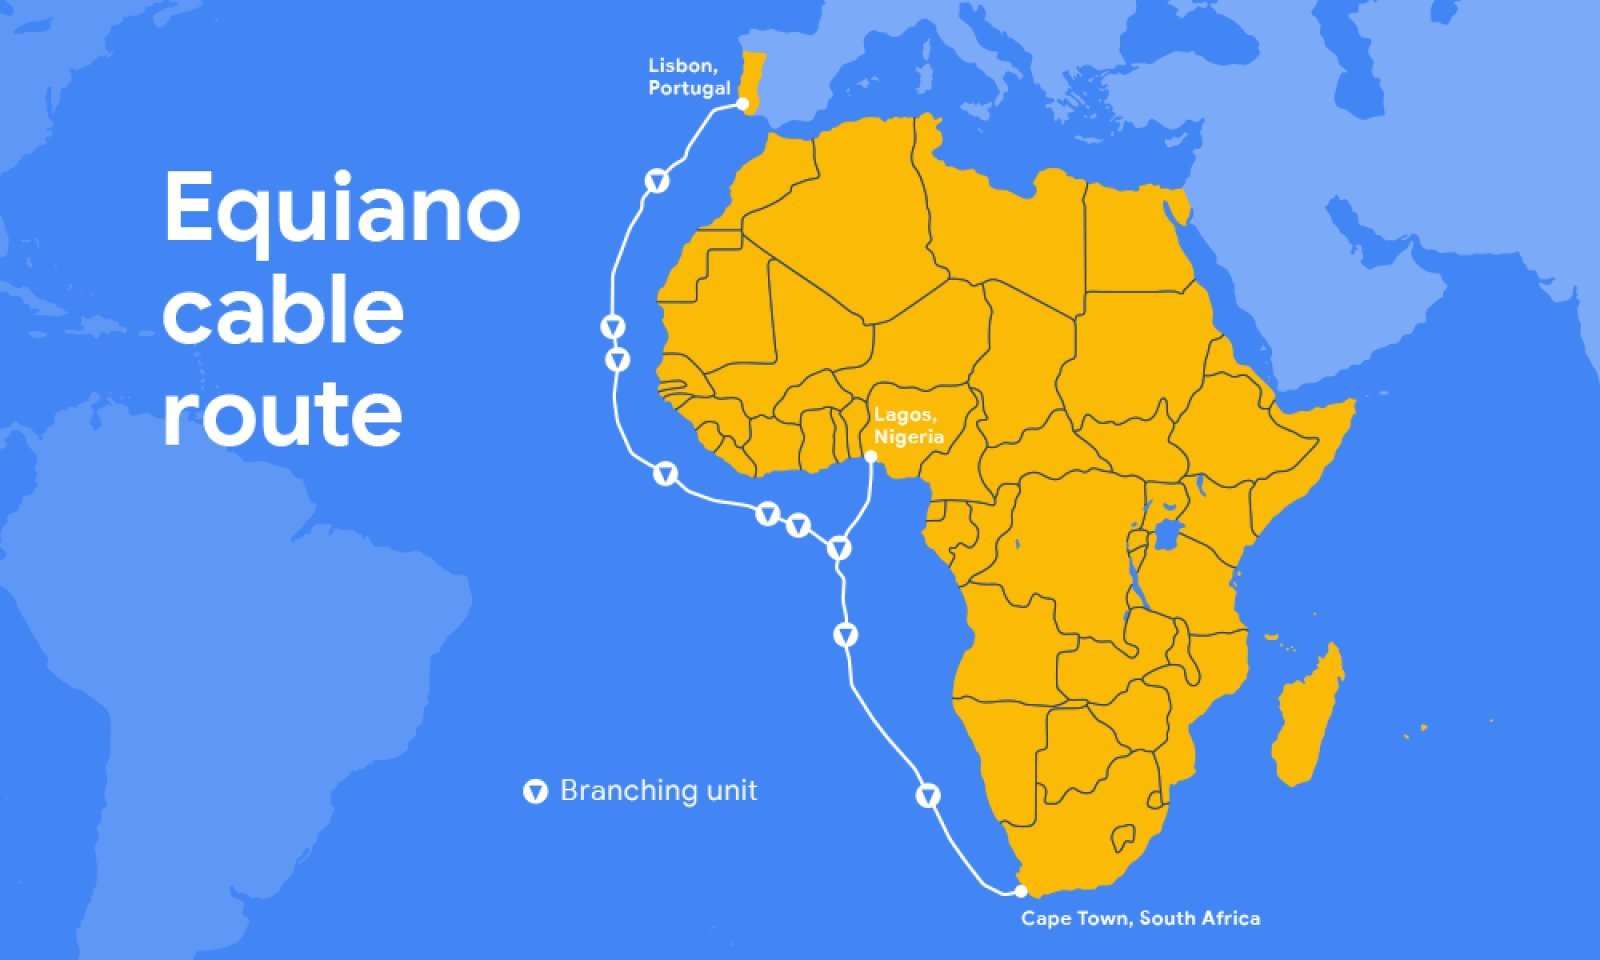 گوگل به دنبال توسعه شبکه کابلی در جهان